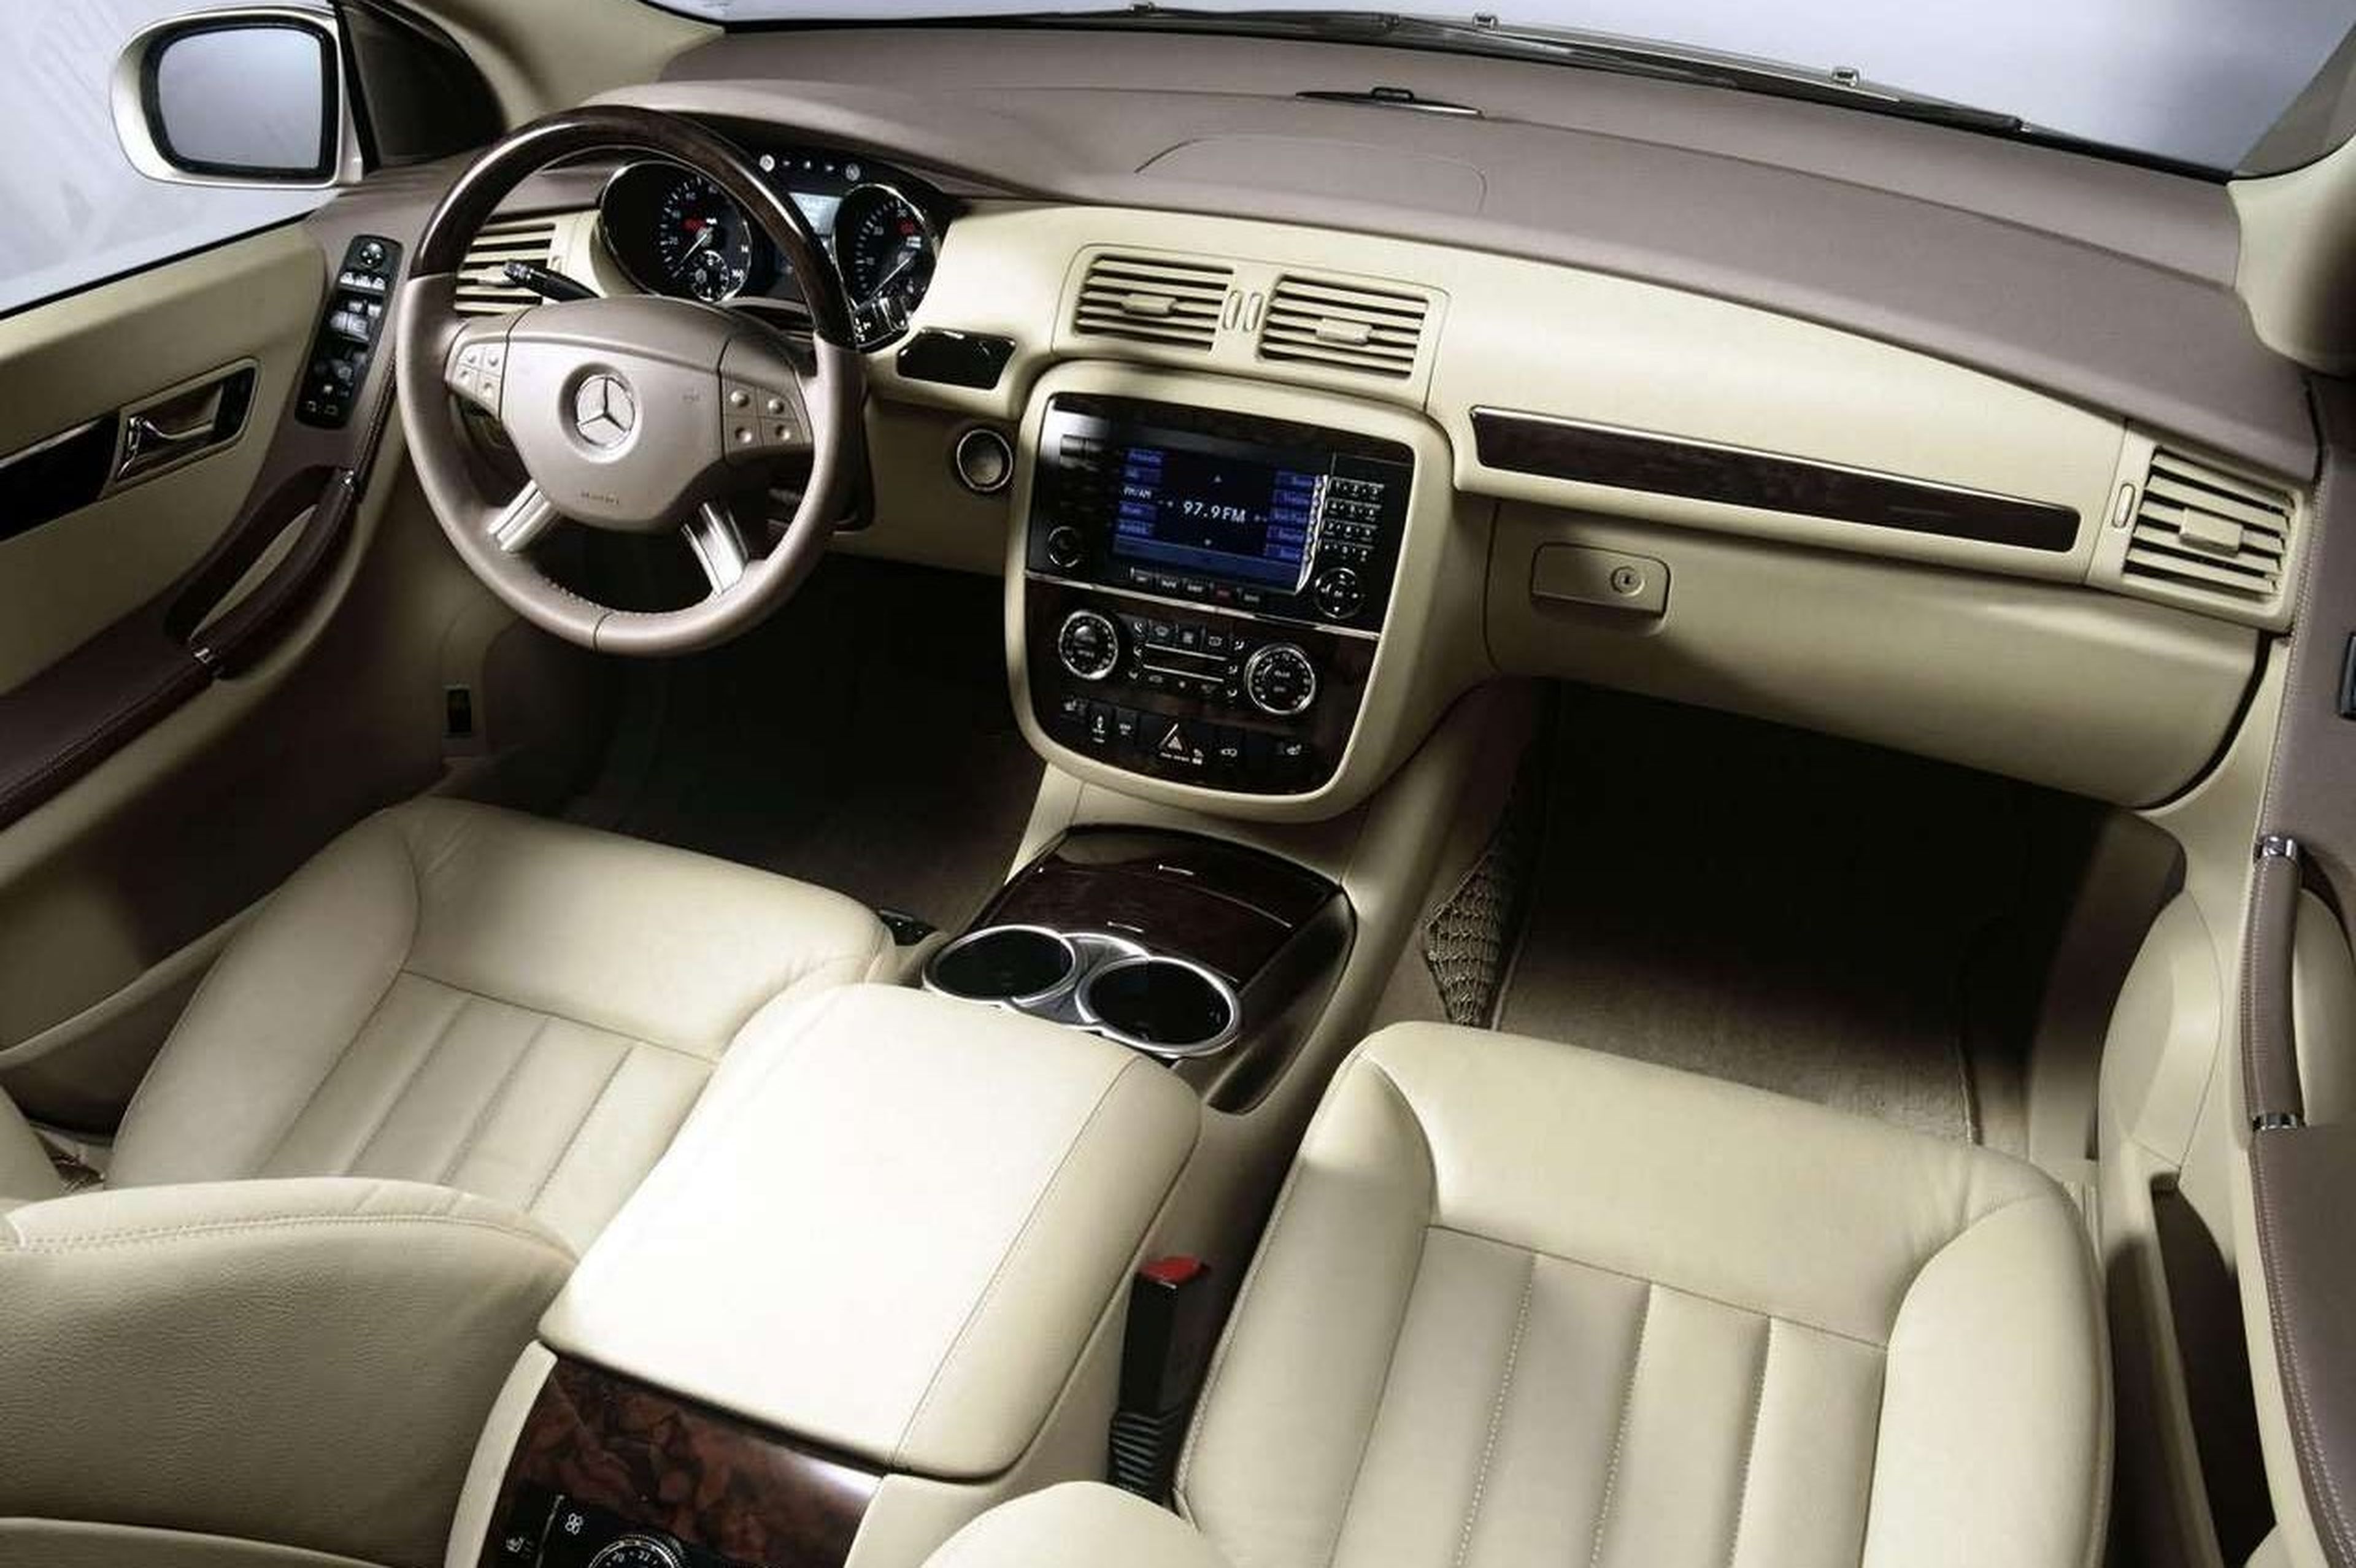 El interior del Mercedes Clase R era muy amplio, cómodo y lujoso.